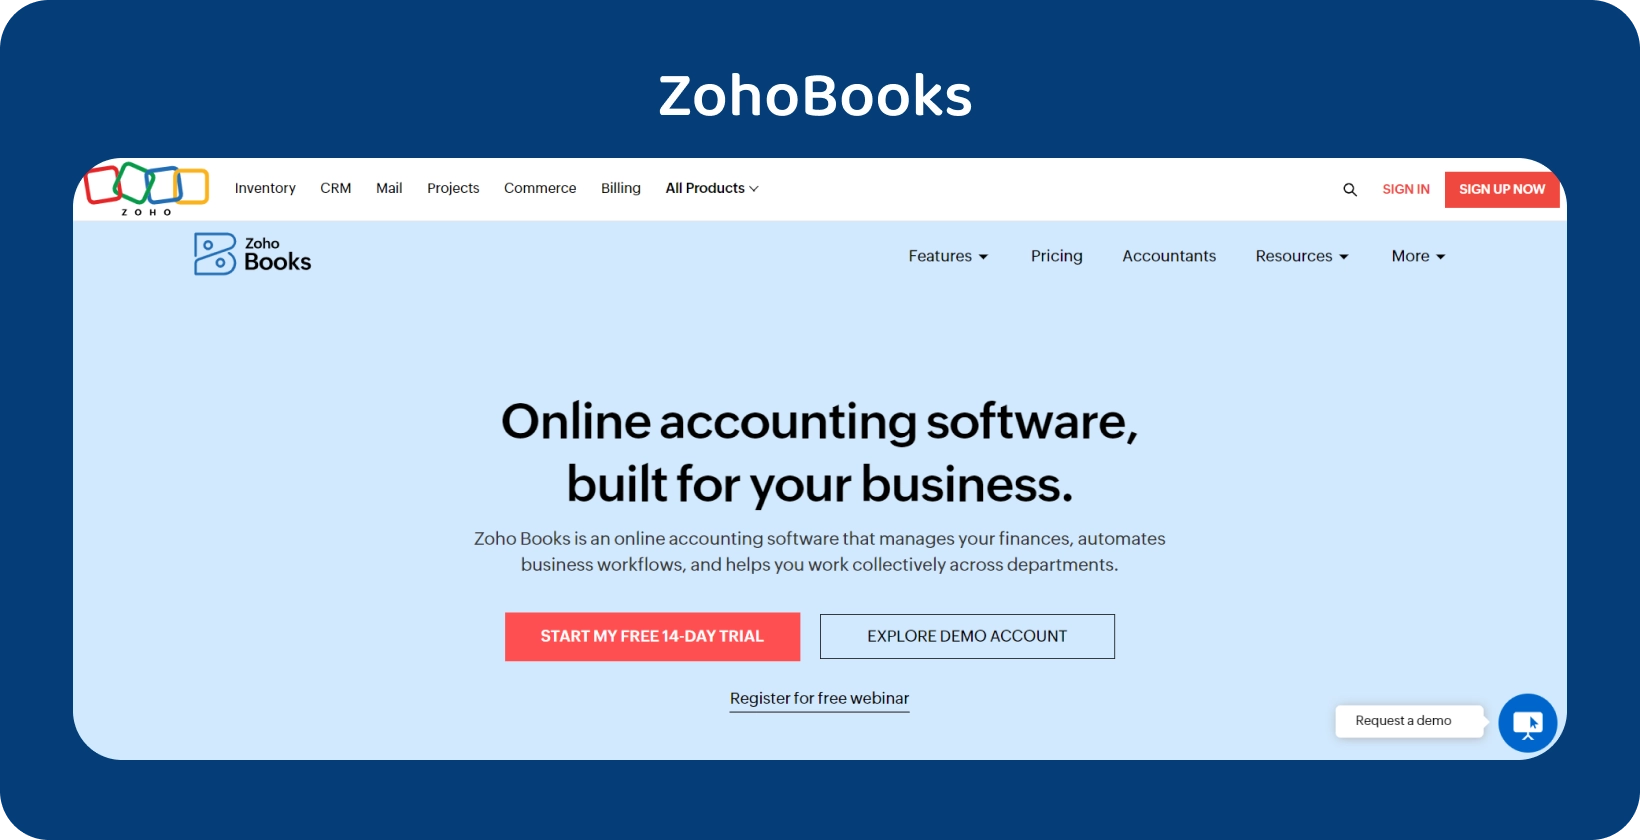 Zoho Books kodulehe bänner tõstab esile oma ärile kohandatud veebipõhist raamatupidamistarkvara sujuvamaks toimimiseks